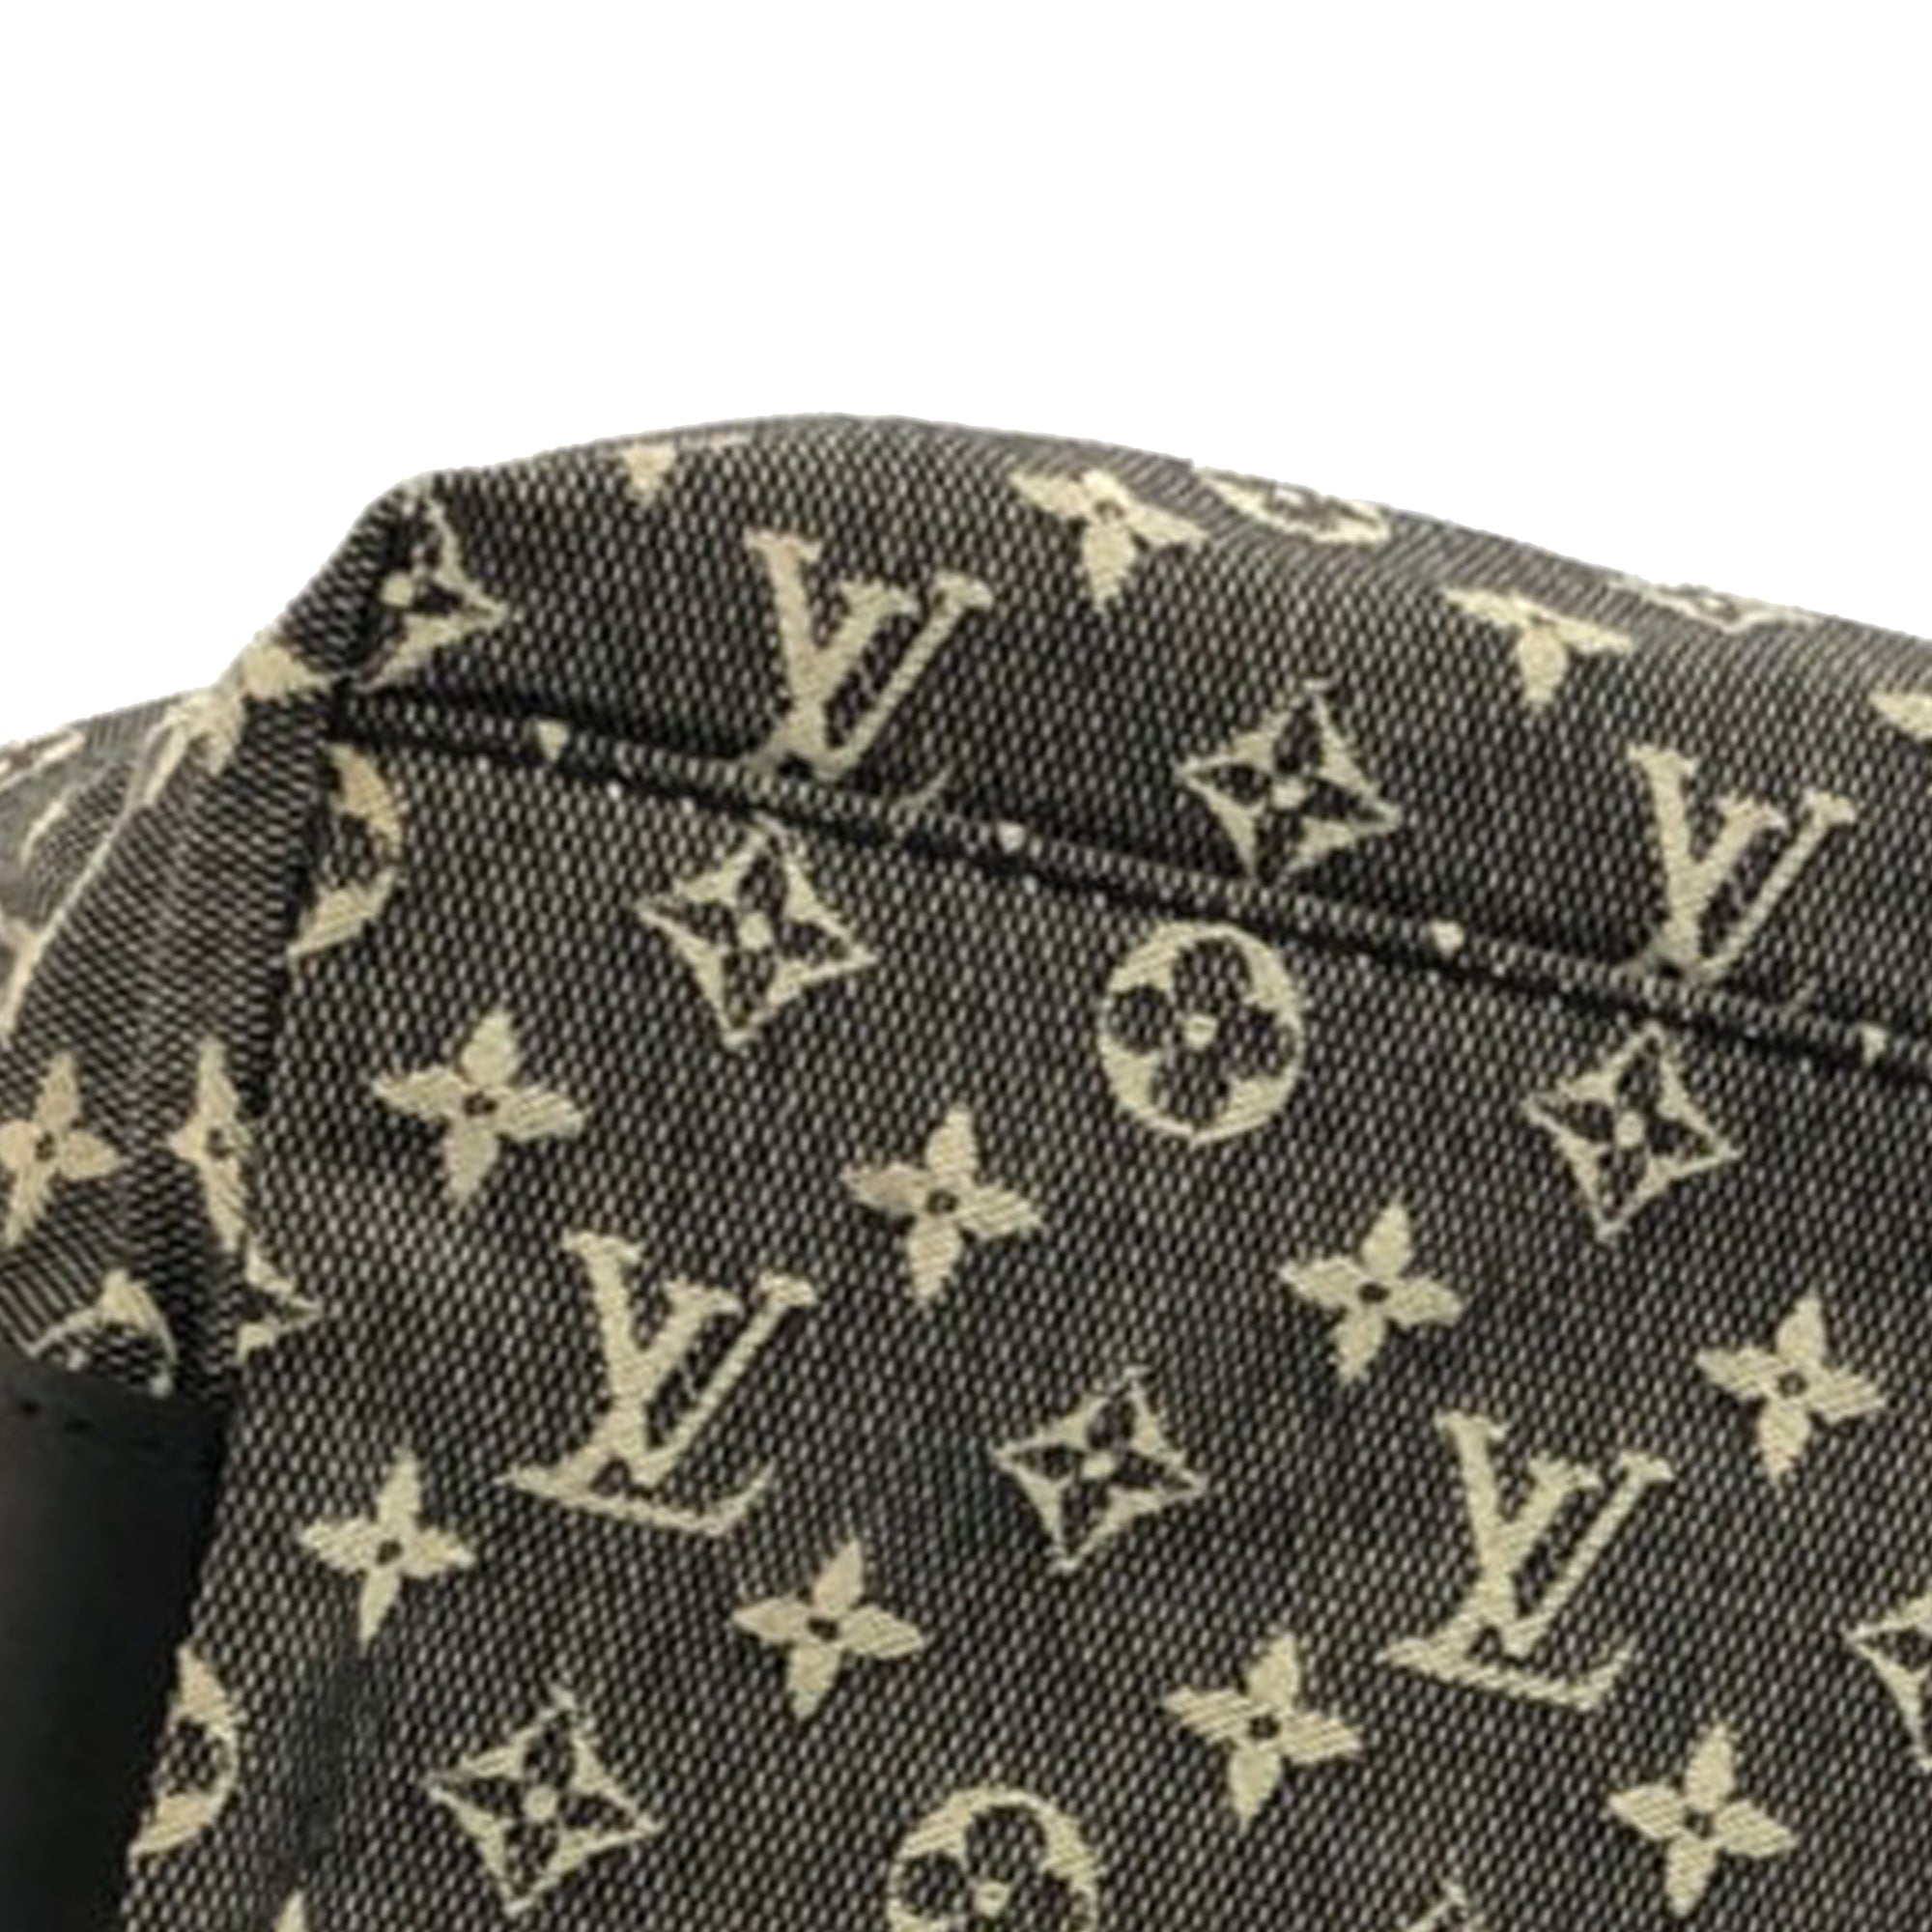 Louis Vuitton Monogram Mini Lin Cabas Mary Kate - ShopStyle Satchels & Top  Handle Bags